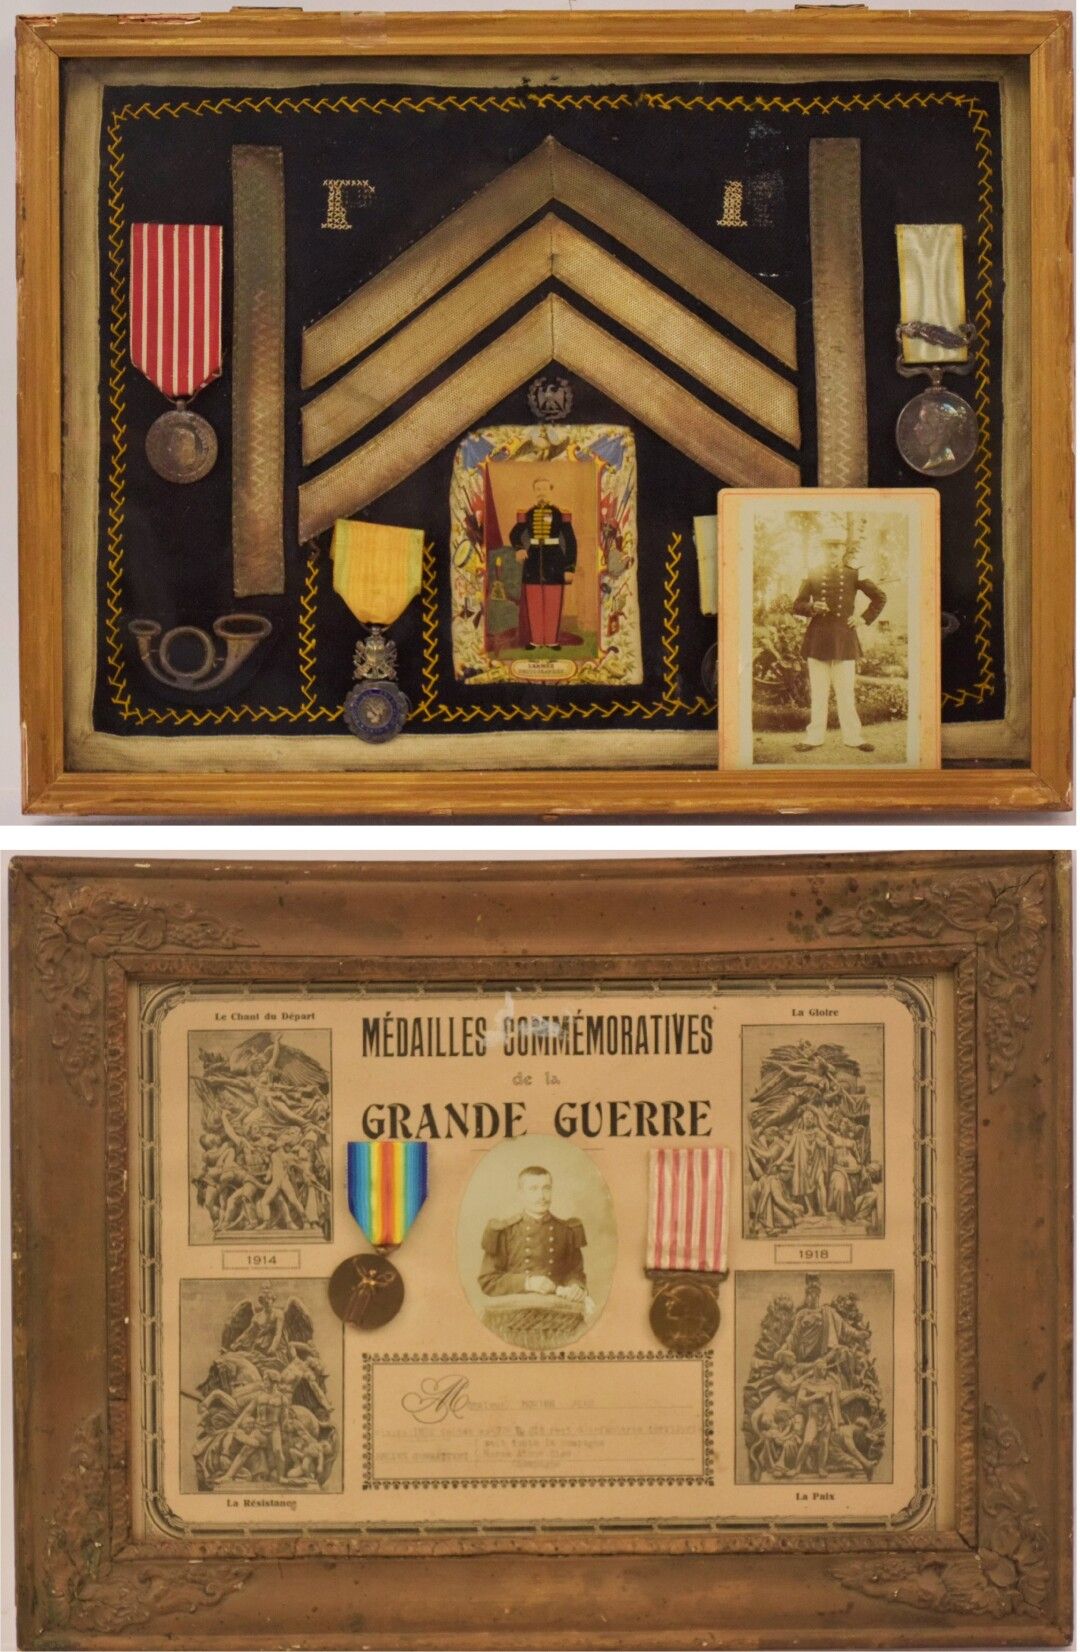 Null [MILITARIA]

第二帝国伏尔泰的纪念框，包含一枚意大利战役纪念章和一枚带塞巴斯托波尔条的克里米亚战役英国勋章，一枚军功章和另一枚奖章。蓝布背&hellip;